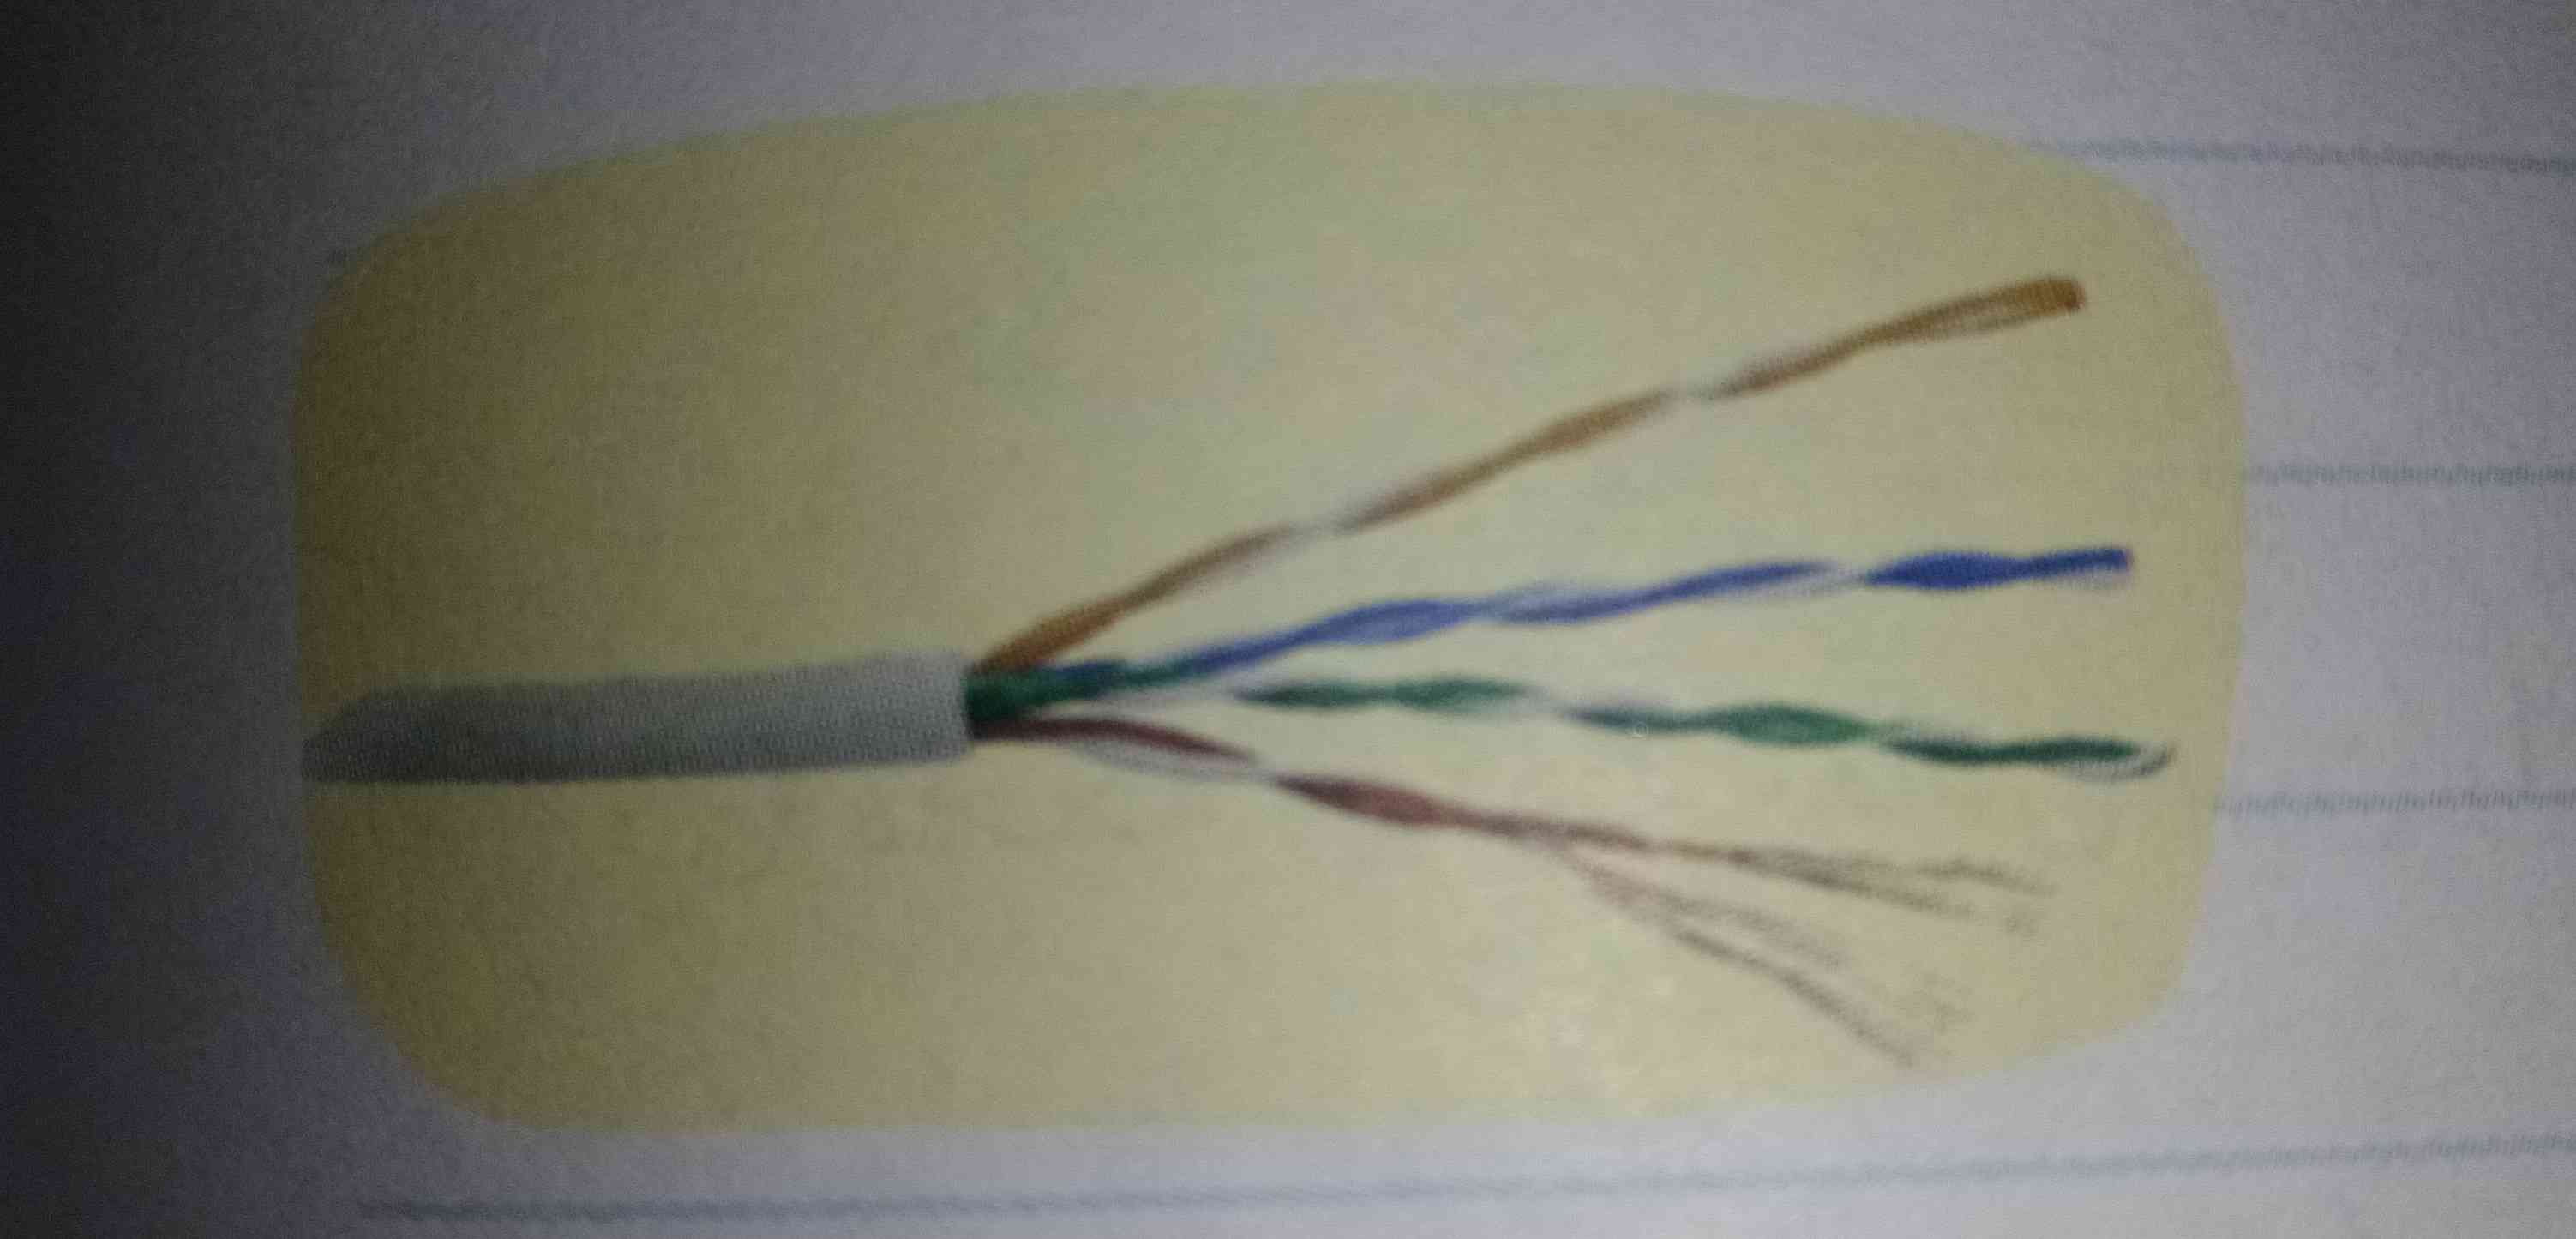 اگر یک عصب را به یک کابل برق که از چند رشته سبم و یک پوشش پلاستیکی تشکیل شده است تشبیه کنیم:
الف)رشته های سیم شبیه کدام قسمت عصب می باشند؟ چرا؟
ب)پوشش پلاستیکی کابل شبیه کدام قسمت عصب می باشد؟ 